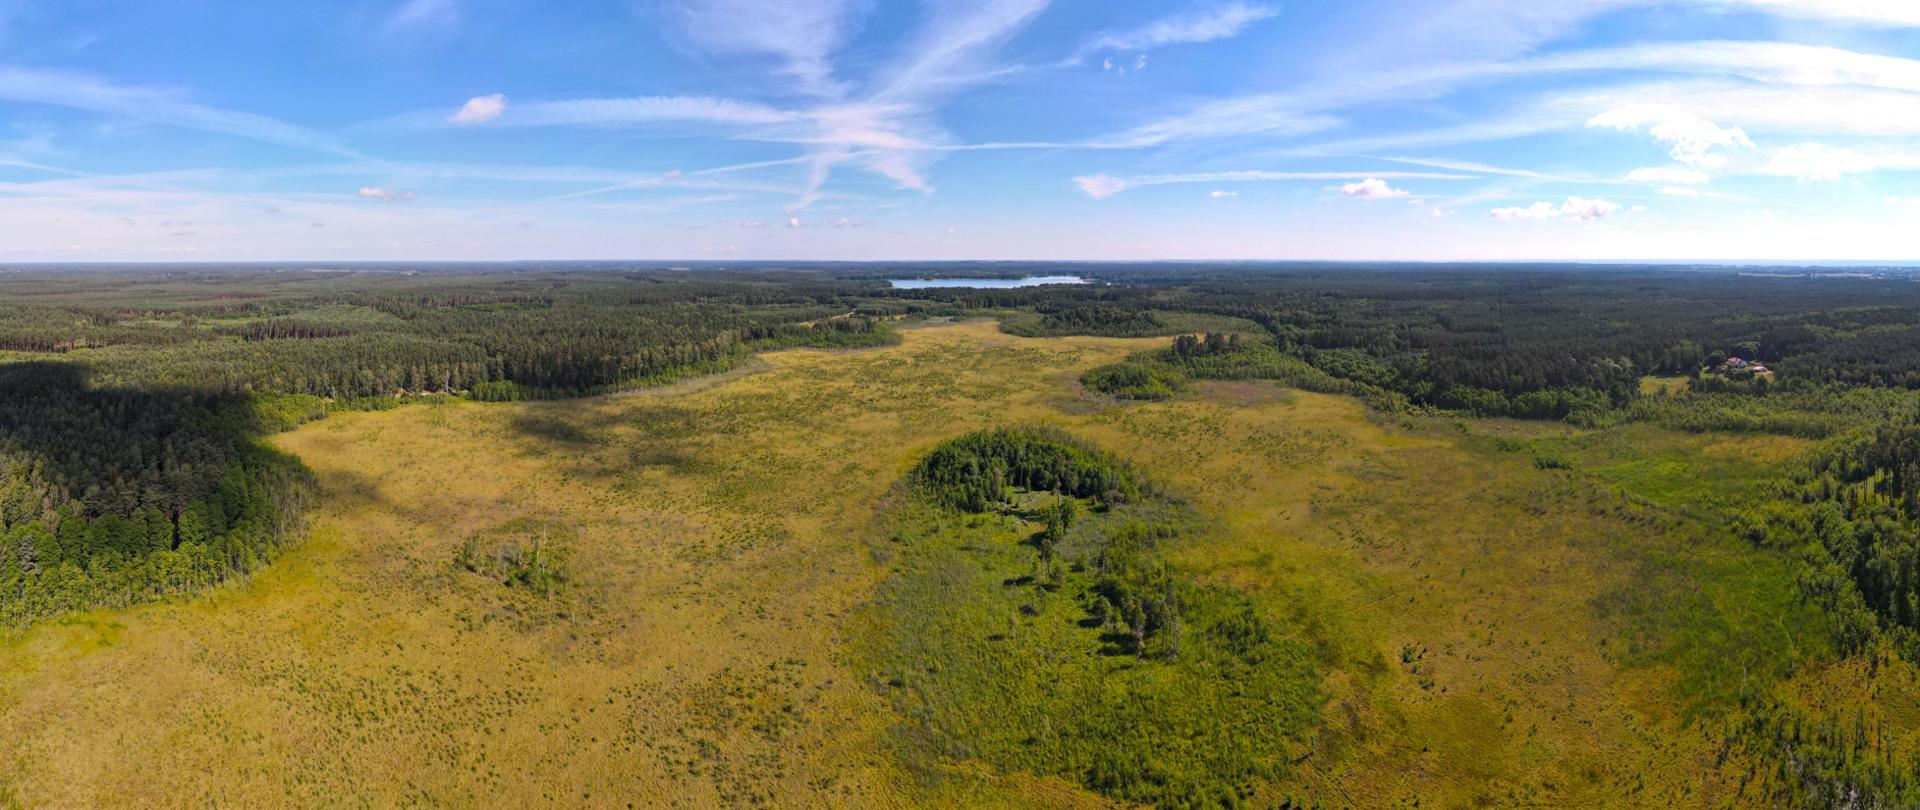 Widok z drona na Projektowany rezerwat przyrody „Bagno Krzewińskie”, na pierwszym planie podmokłe łąki, dalej las i zbiornik wody, a nad nimi błękitne niebo i białe chmury